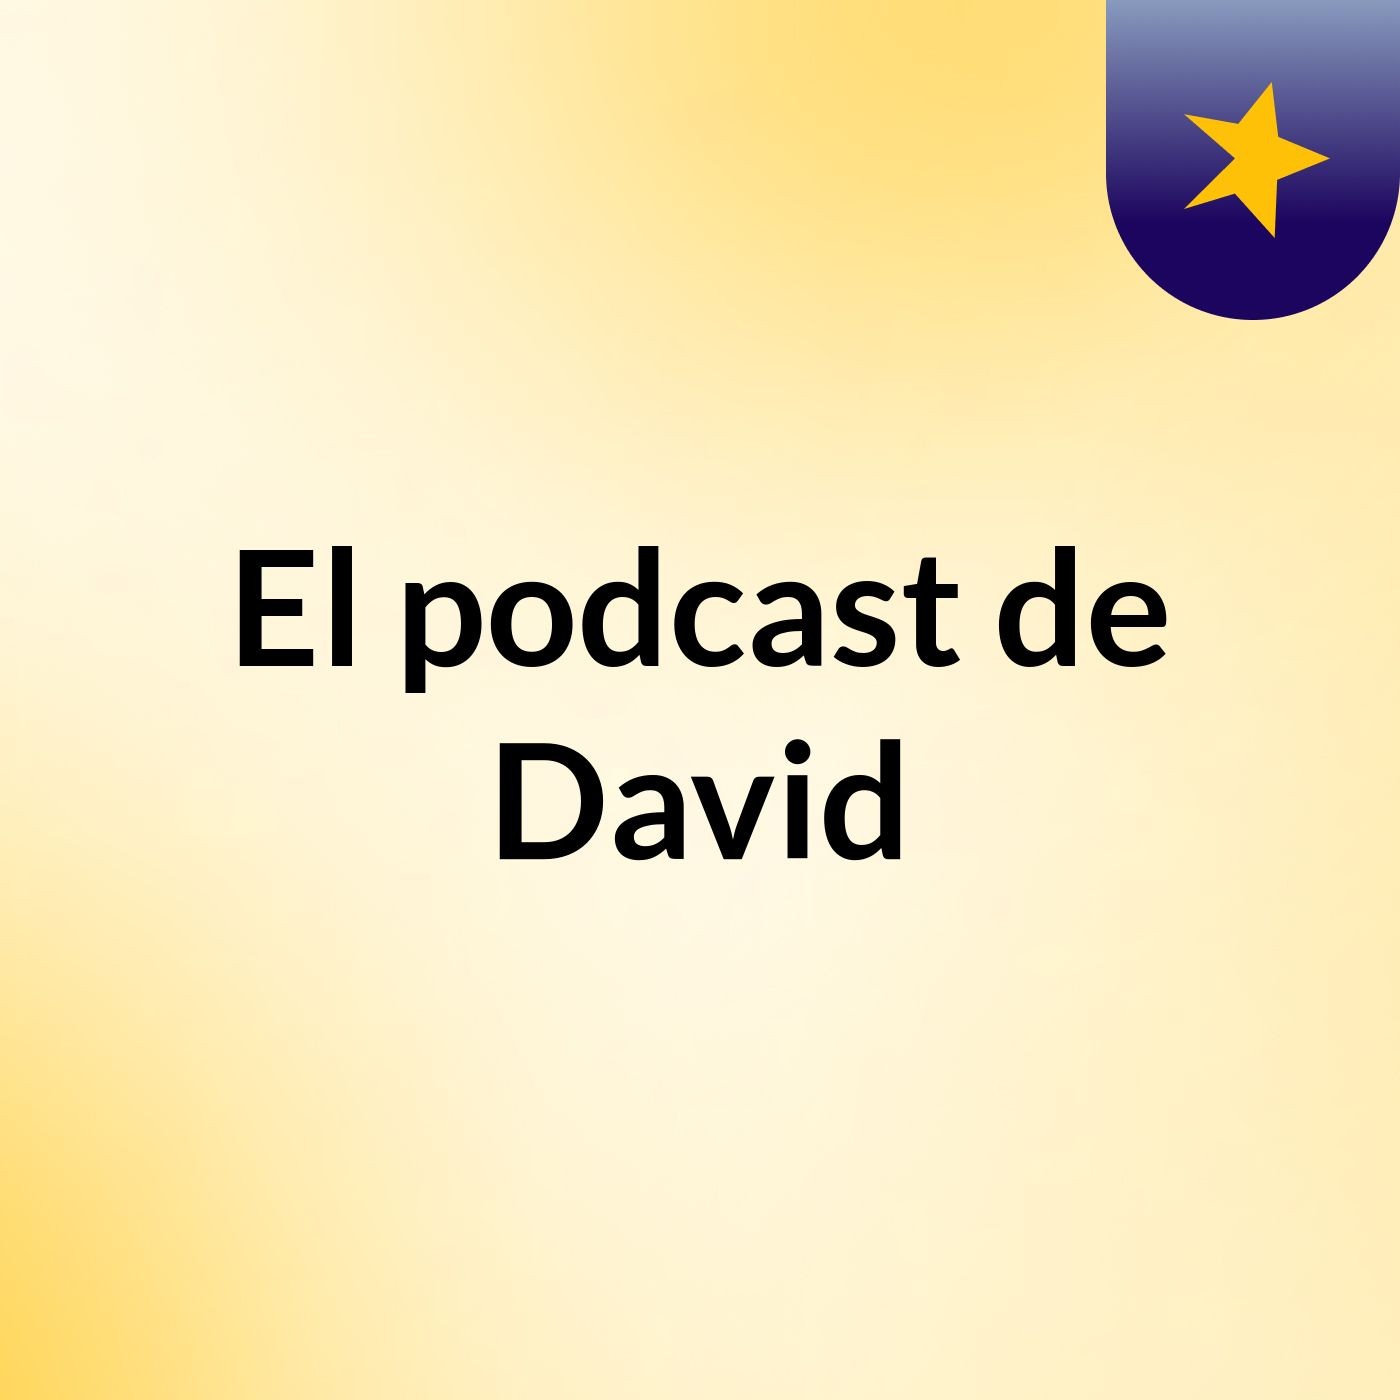 Episodio 3 - El podcast de David